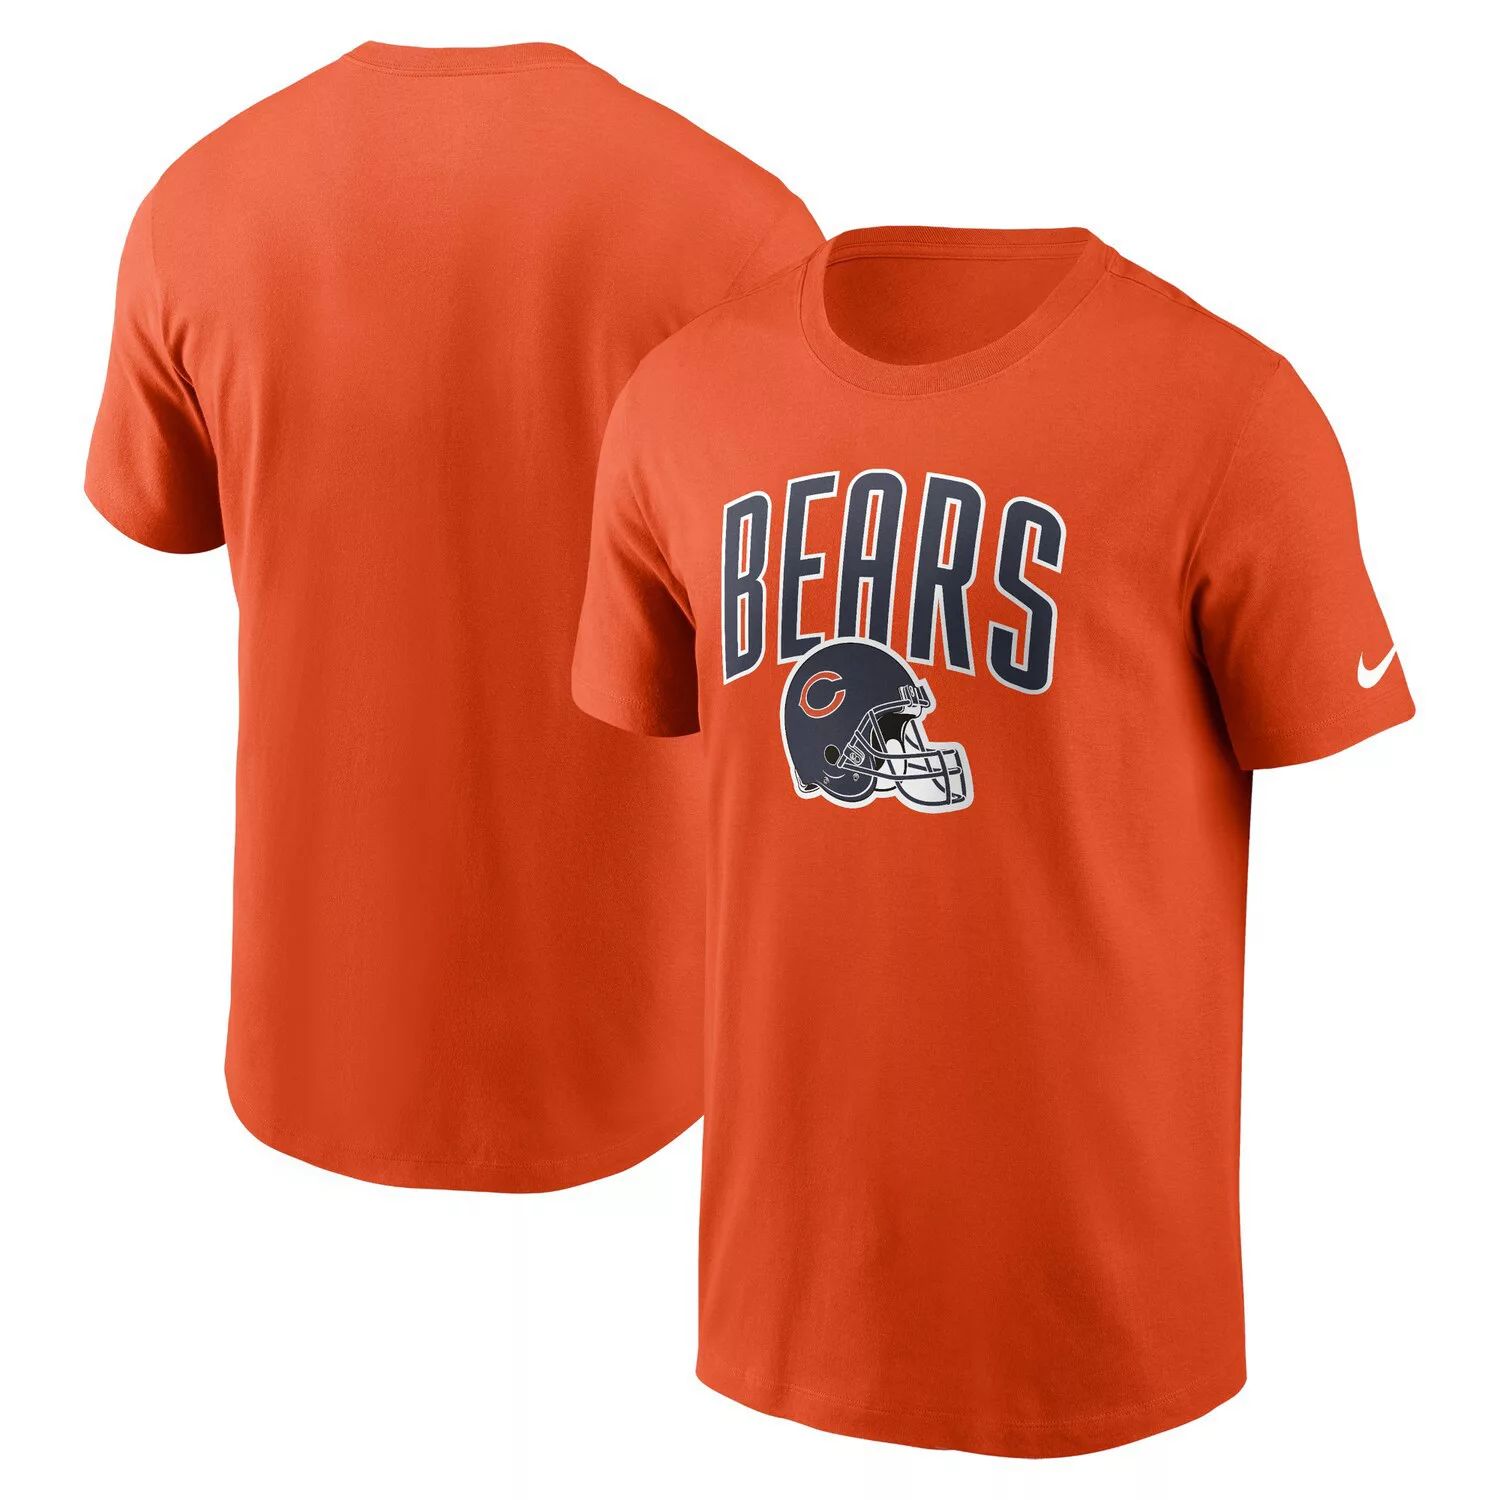 Мужская спортивная футболка Nike оранжевая Chicago Bears Team